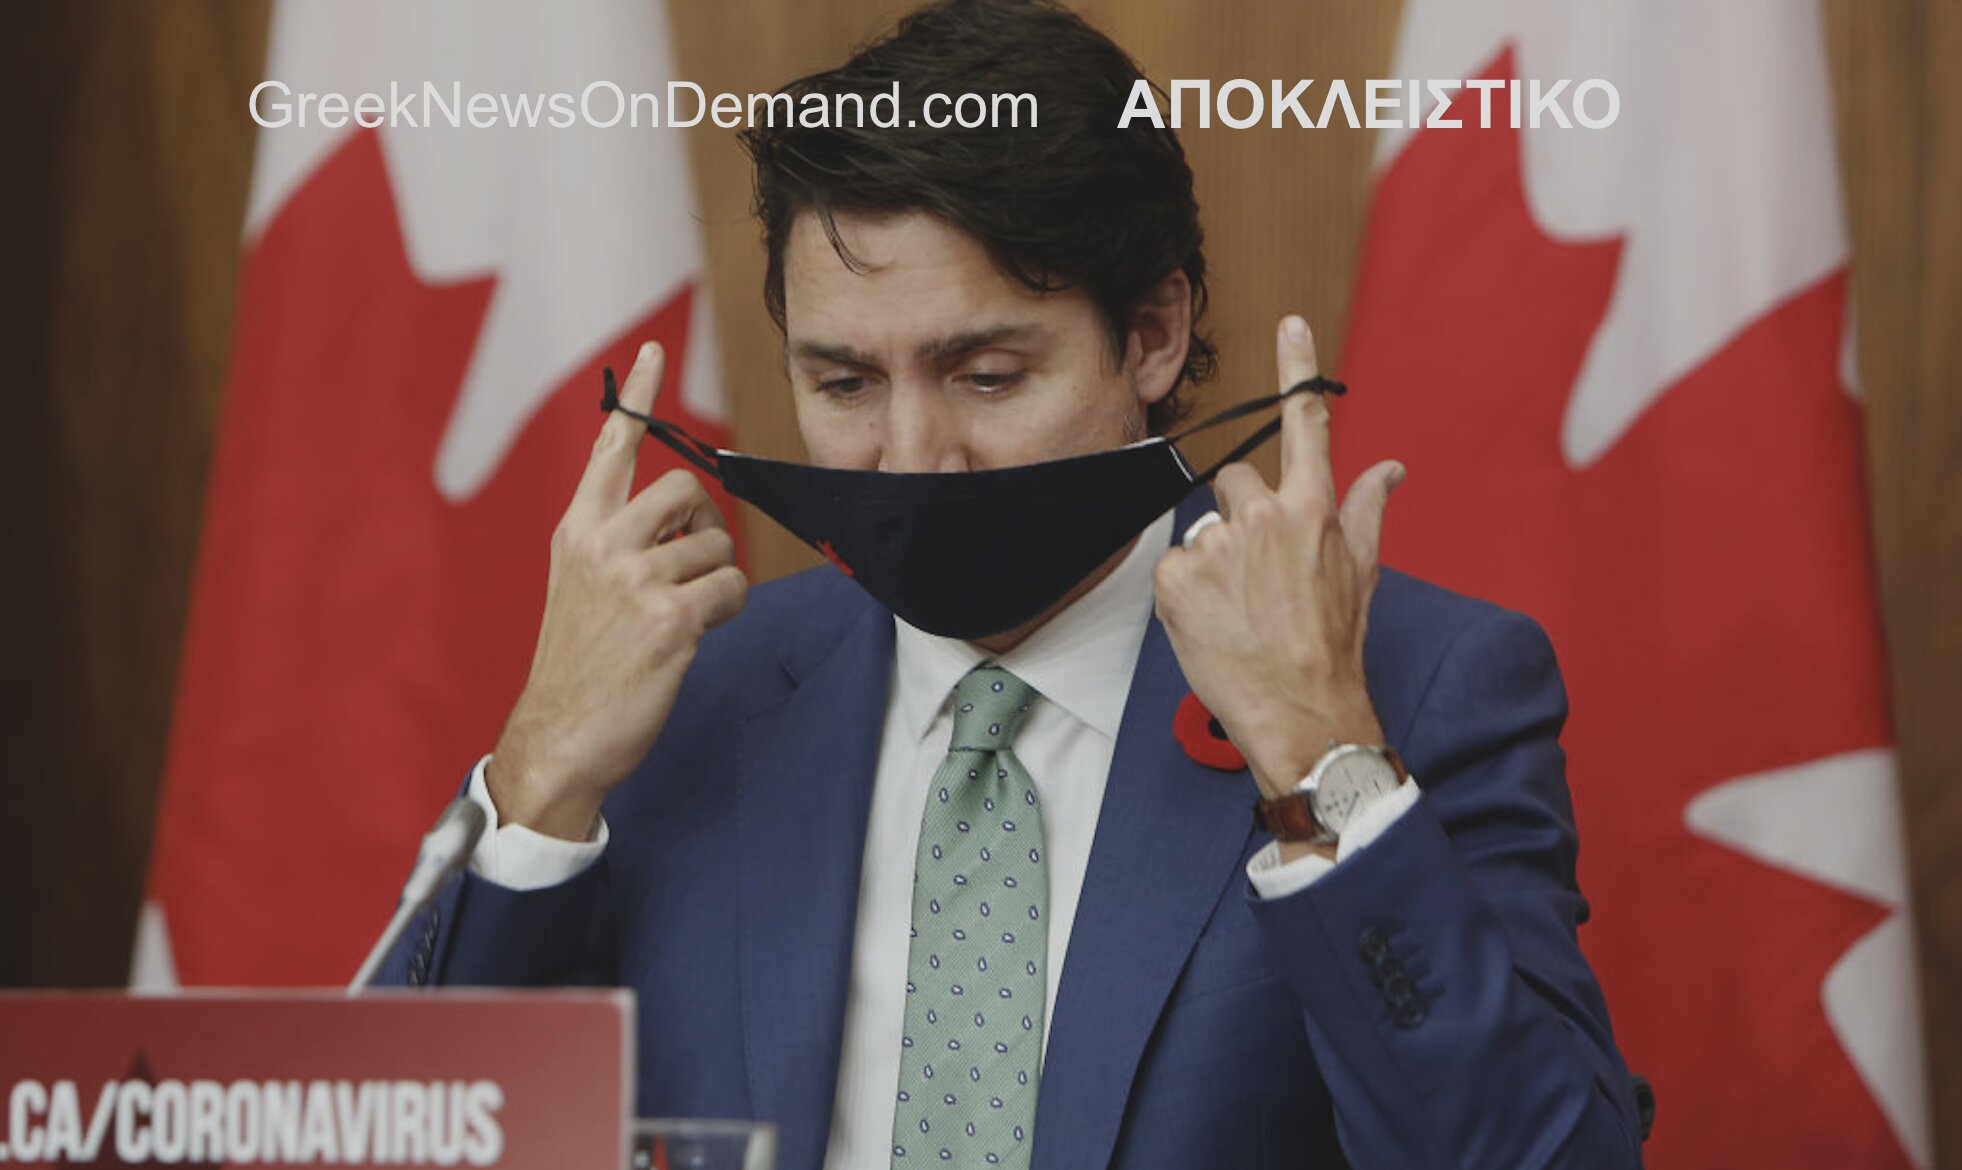 Έπεσαν οι μάσκες: Ο Οργανισμός Δημόσιας Υγείας του Καναδά του Τριντό παραδέχεται πως ο «κορωνοϊός»…ΔΕΝ ΥΠΑΡΧΕΙ…!!!